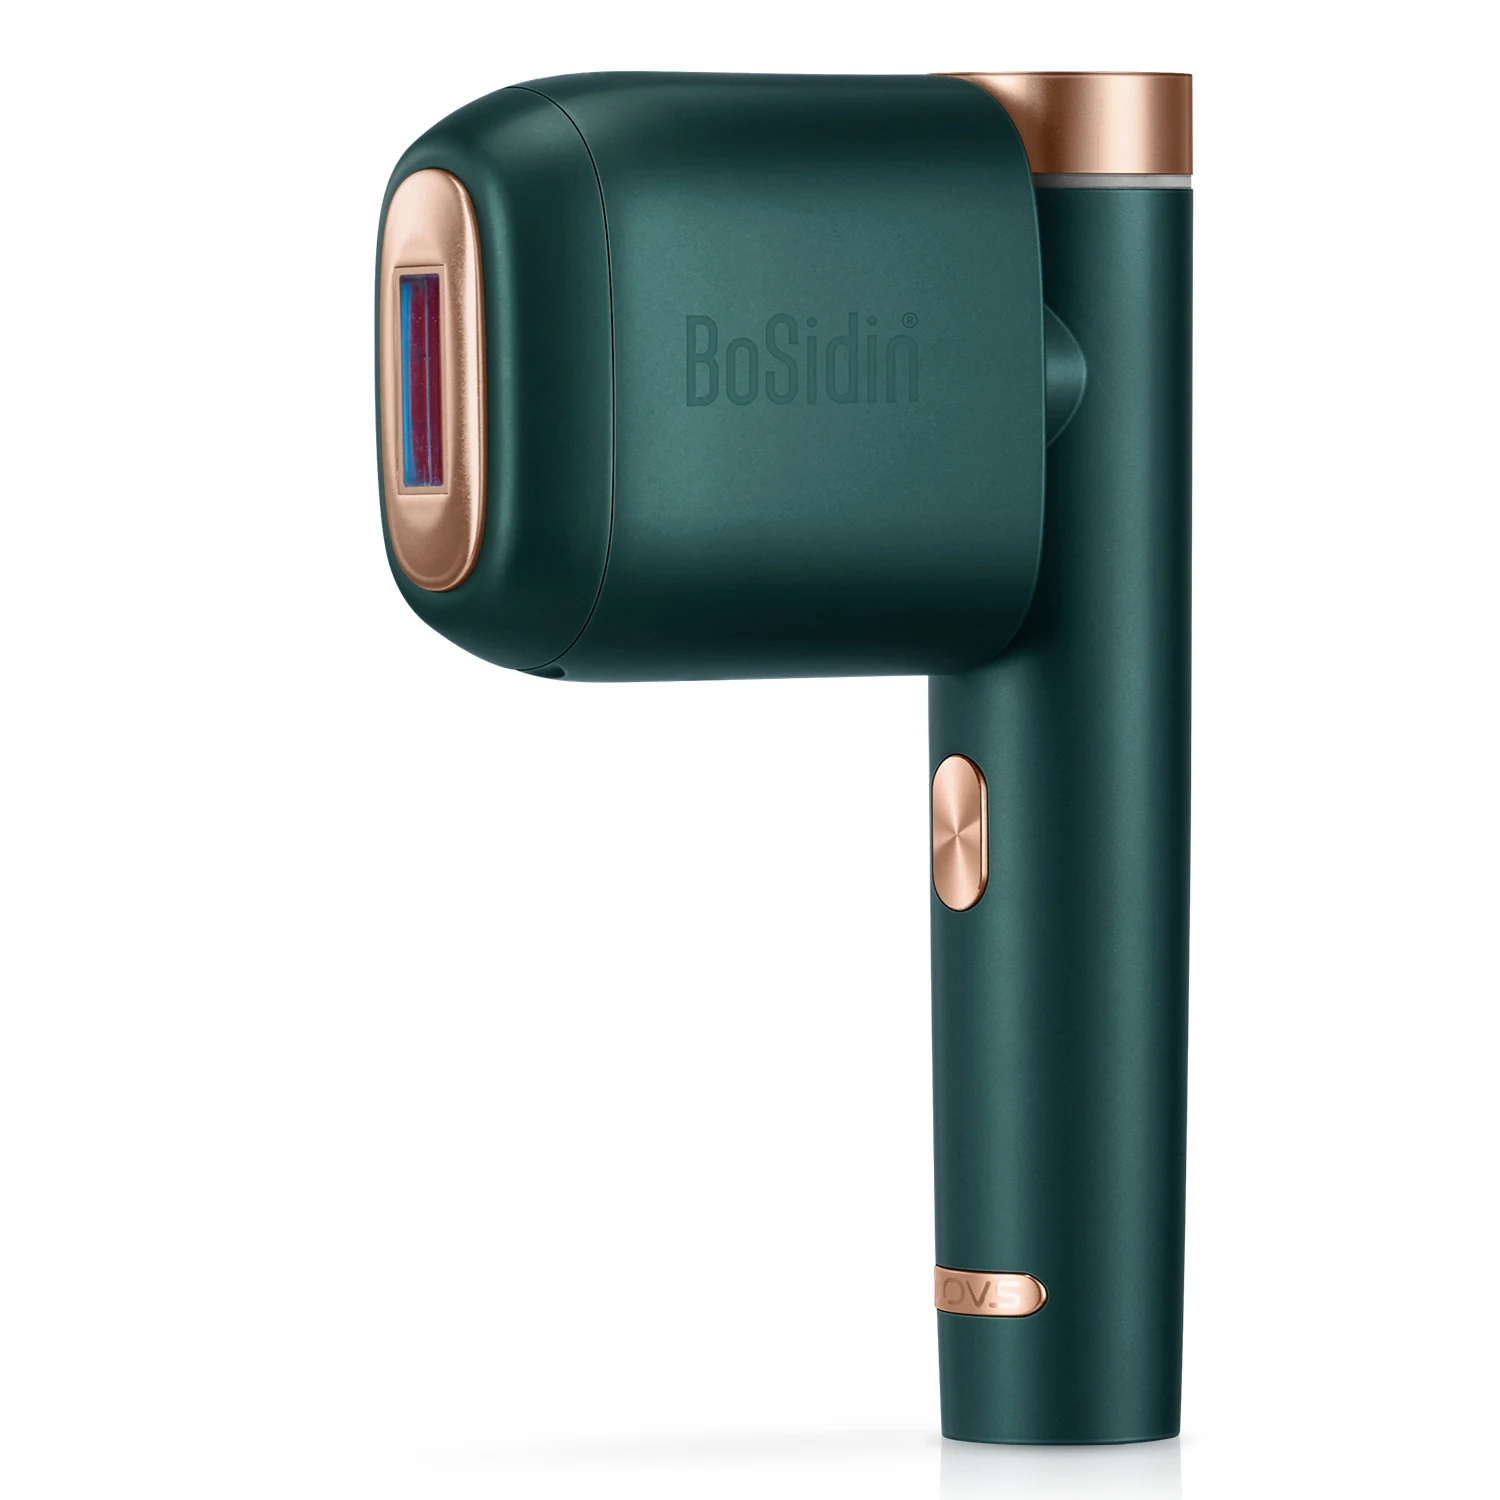 Лазерный эпилятор Bosidin, высокое качество, портативный перманентный омоложение кожи, IPL удаление волос, домашнее вращение на 180 градусов